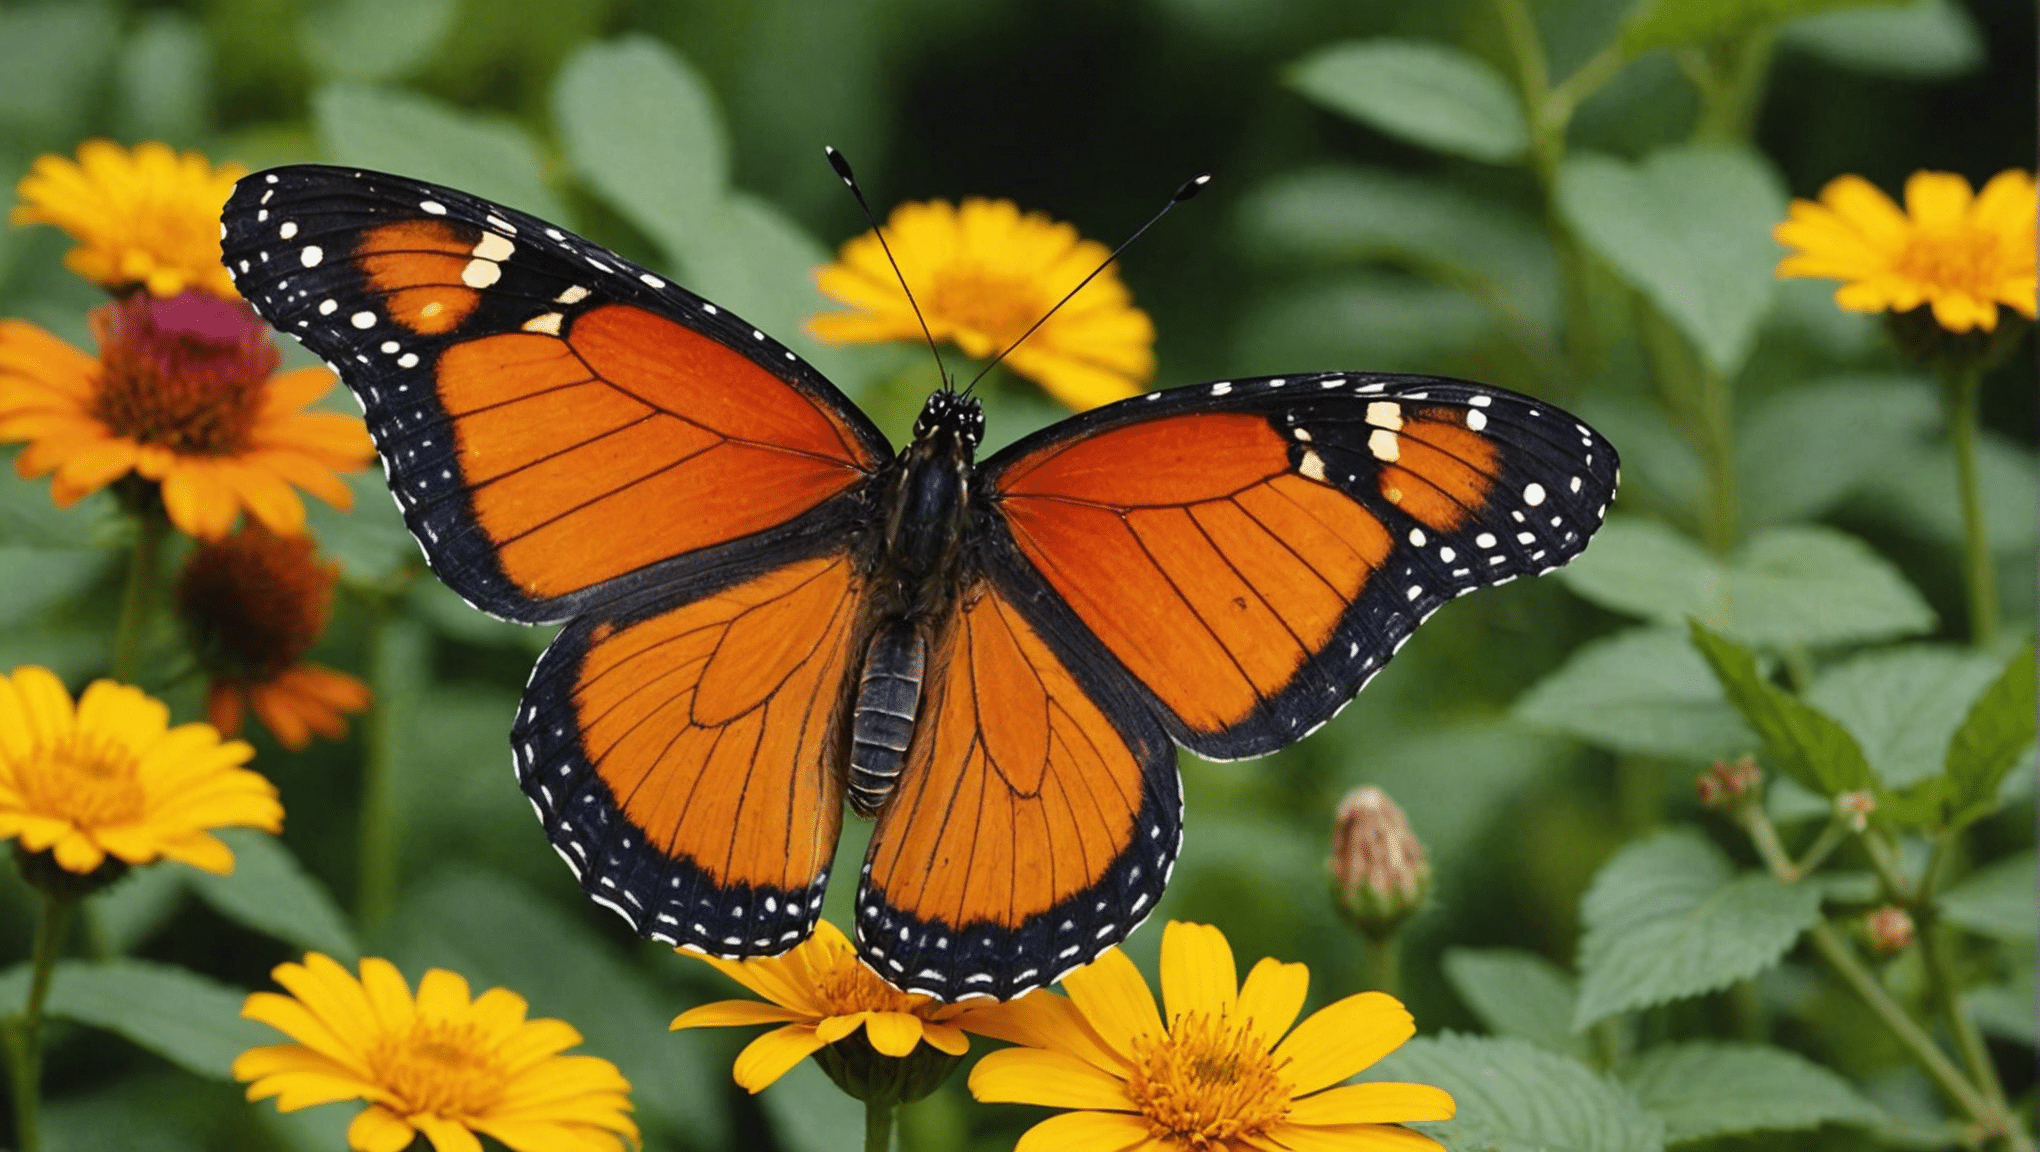 Descubra datos divertidos y fascinantes sobre las mariposas con nuestro atractivo contenido.